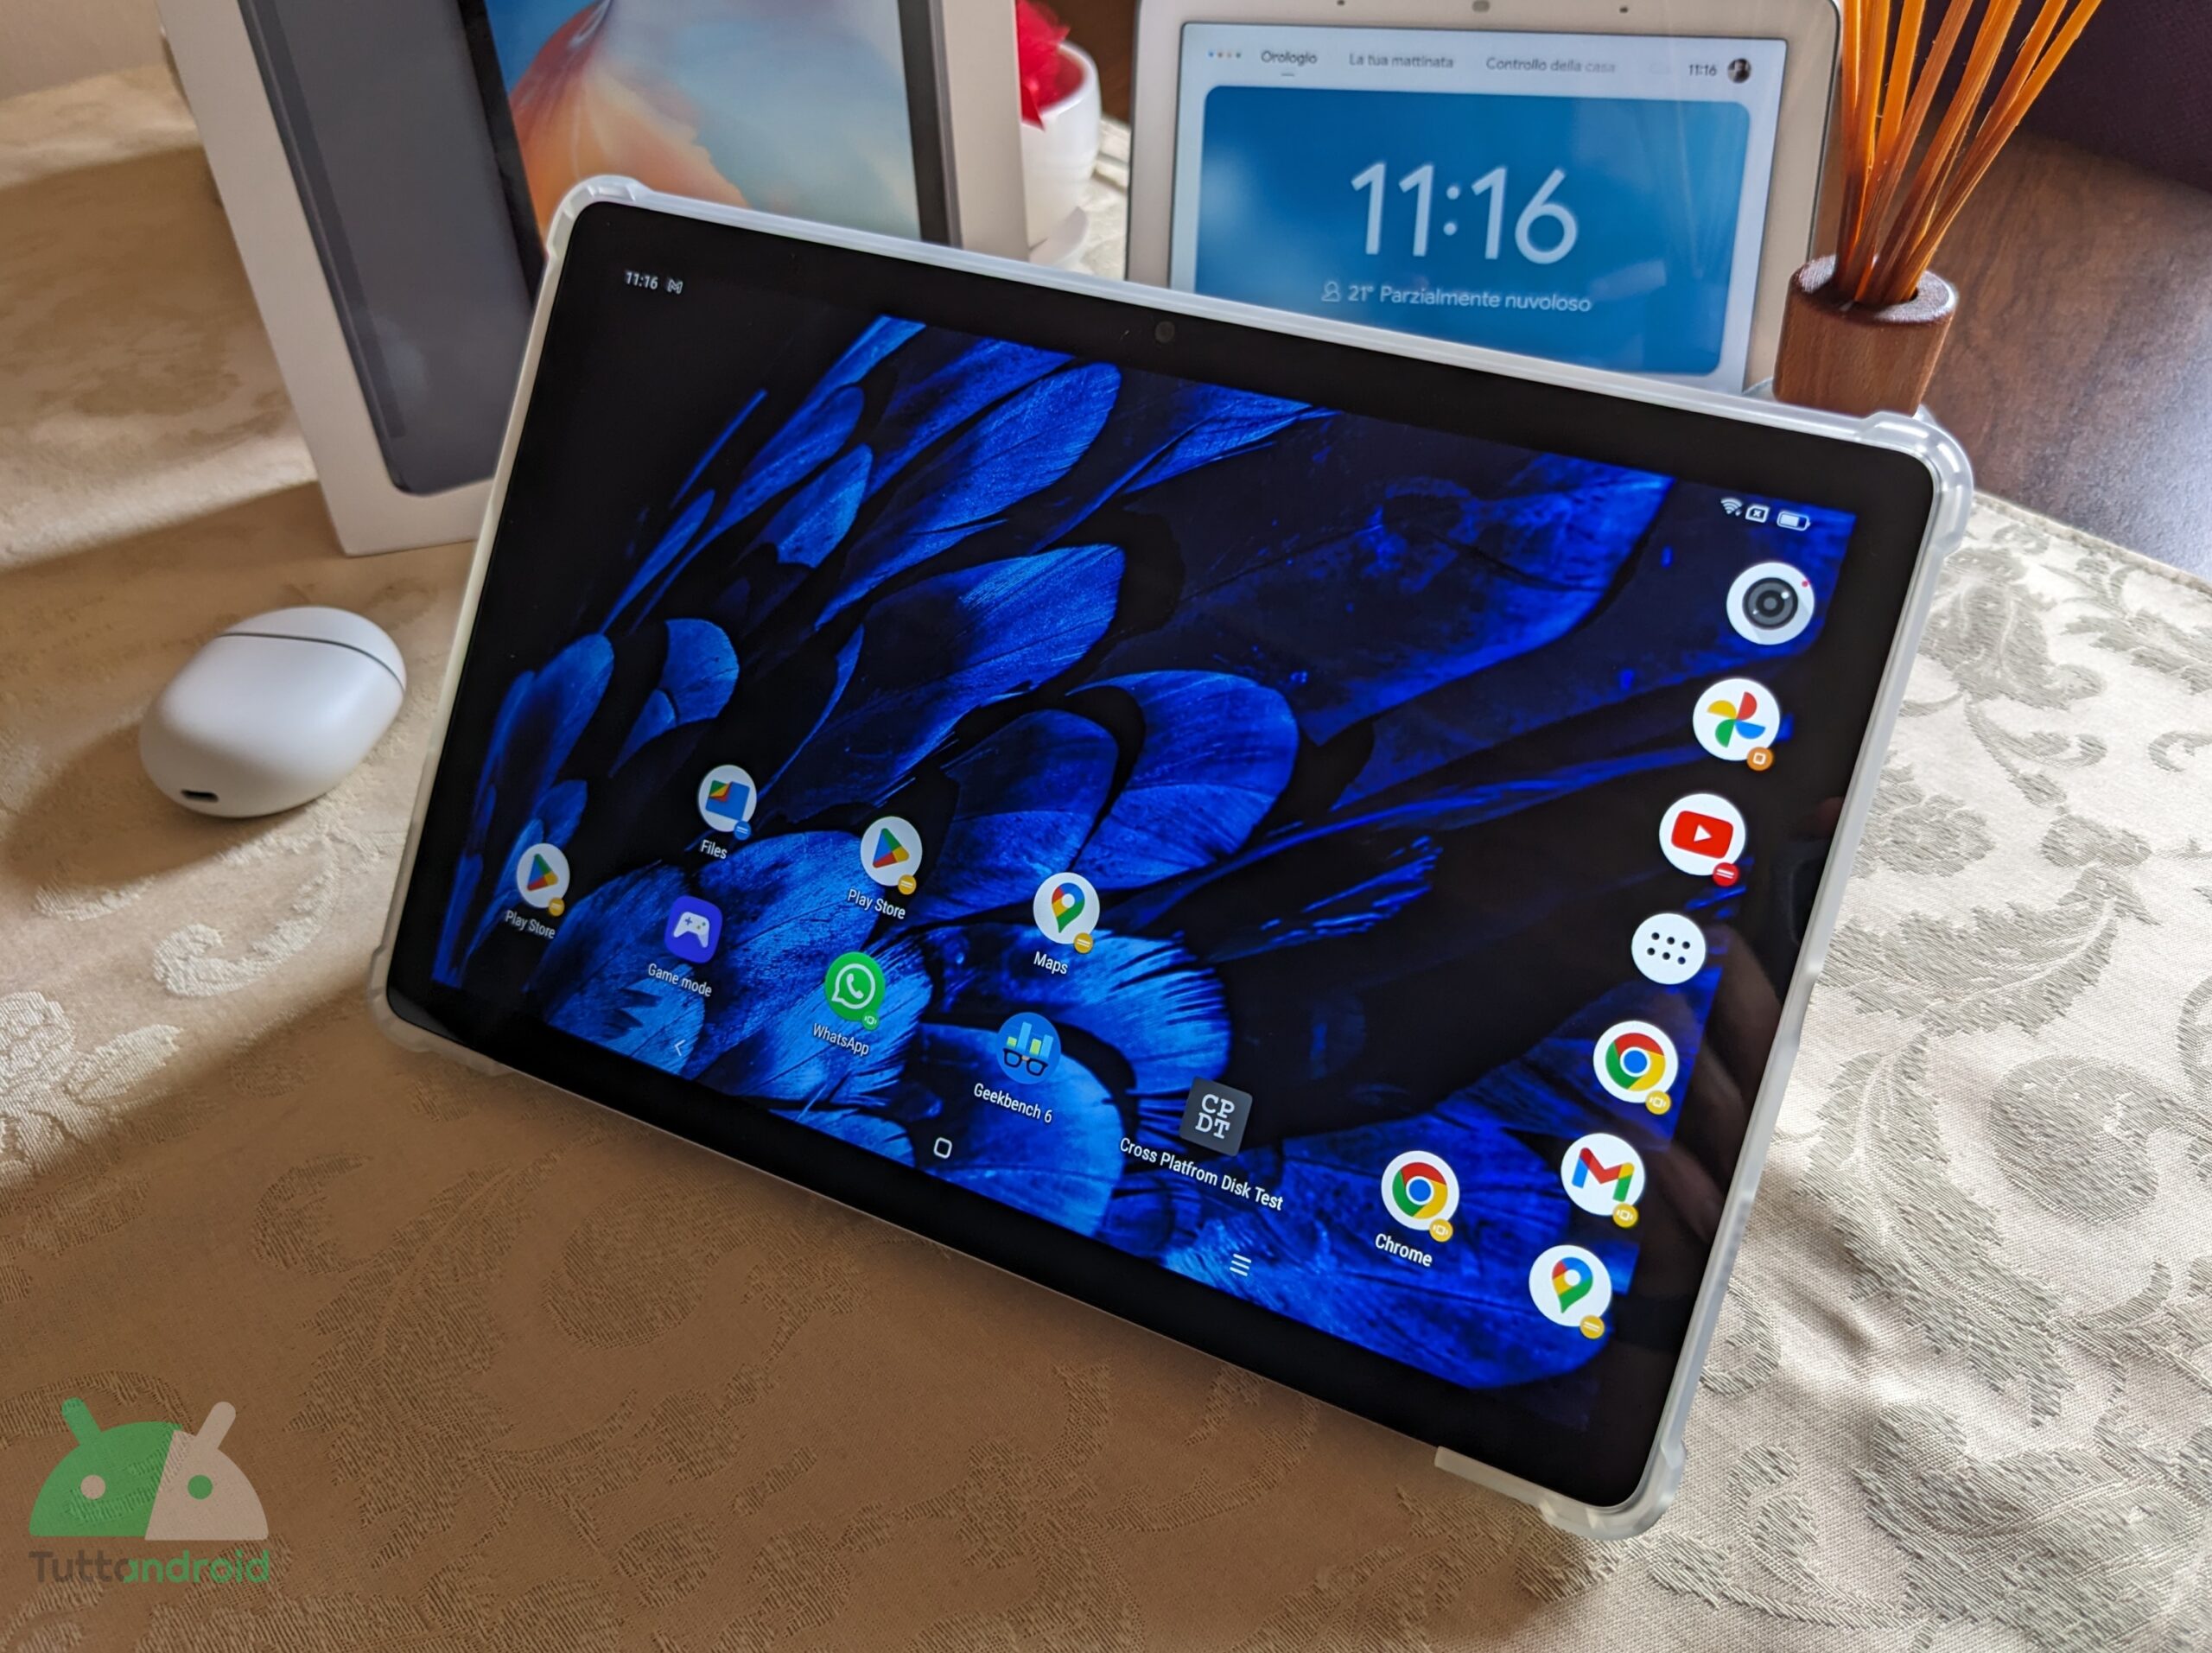 Nuova offerta: il tablet Blackview Tab 12 Pro a 140€ non ha rivali